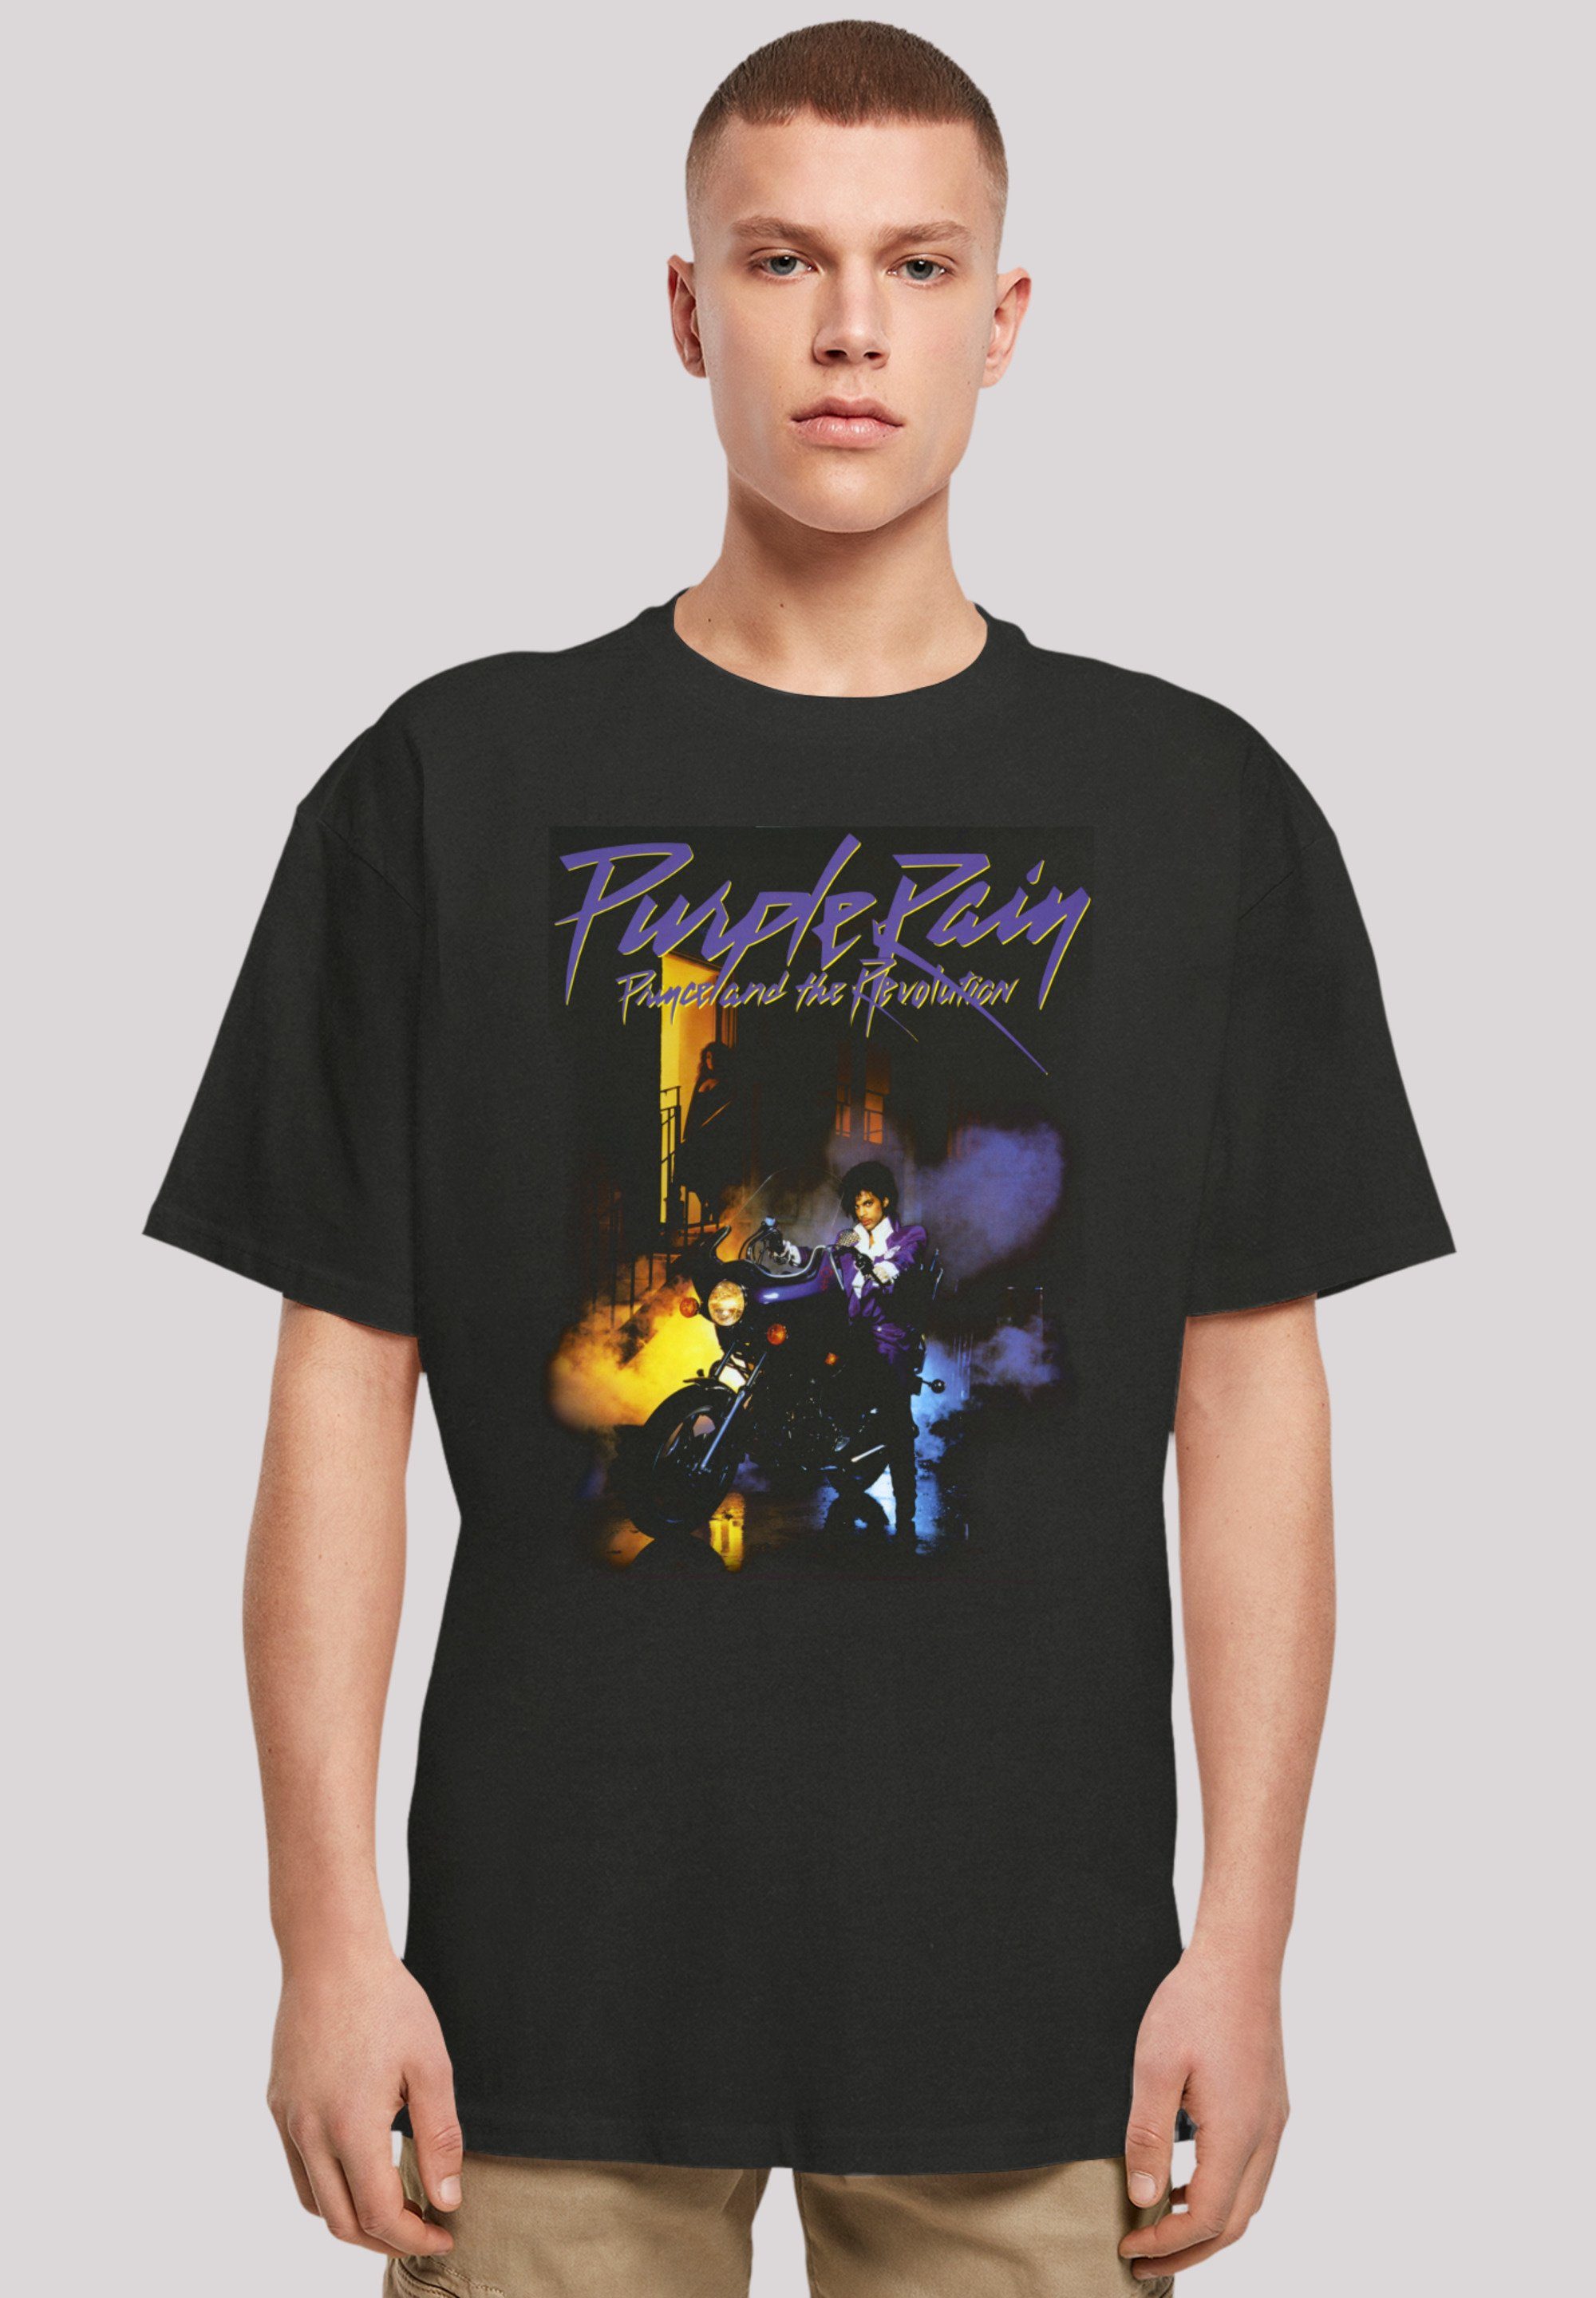 Band, Passform Musik Rain und F4NT4STIC Premium Purple Schultern Weite Prince T-Shirt Qualität, Rock-Musik, überschnittene